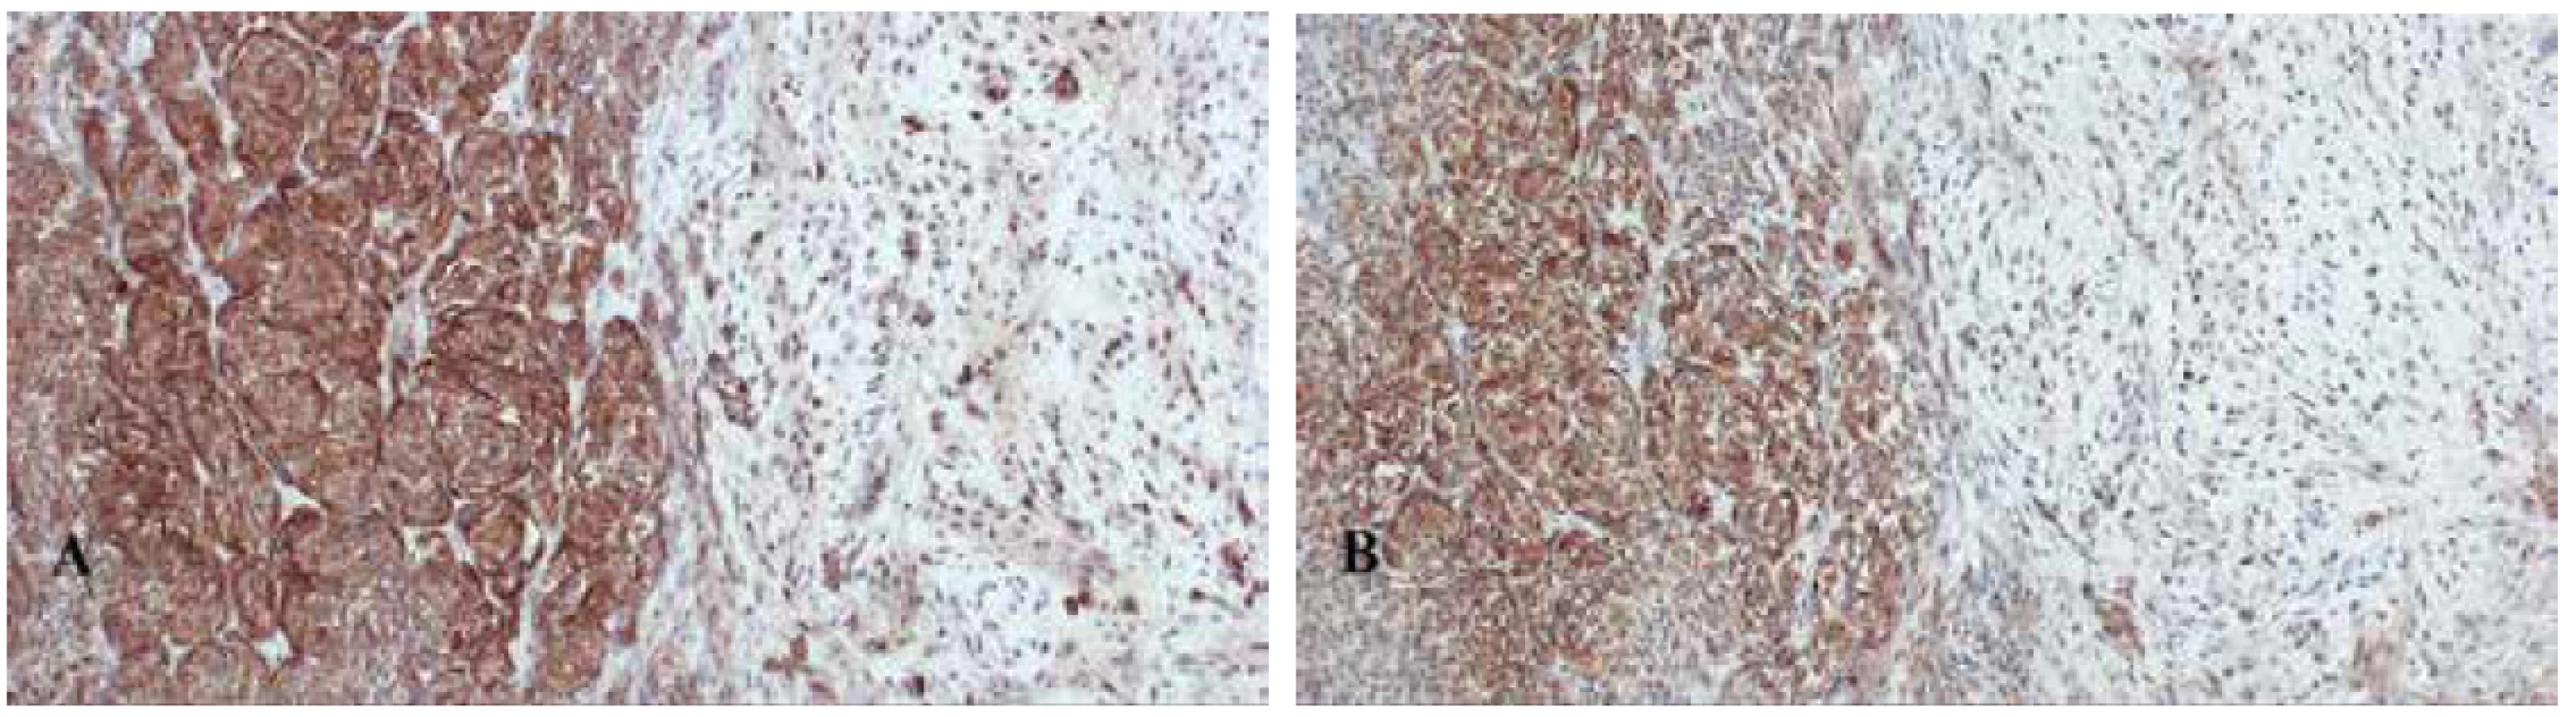 Imunohistochemický průkaz HMB-45 (A) a melan A (B) v nádorových melanocytech (IHC, zvětšeno 10x).